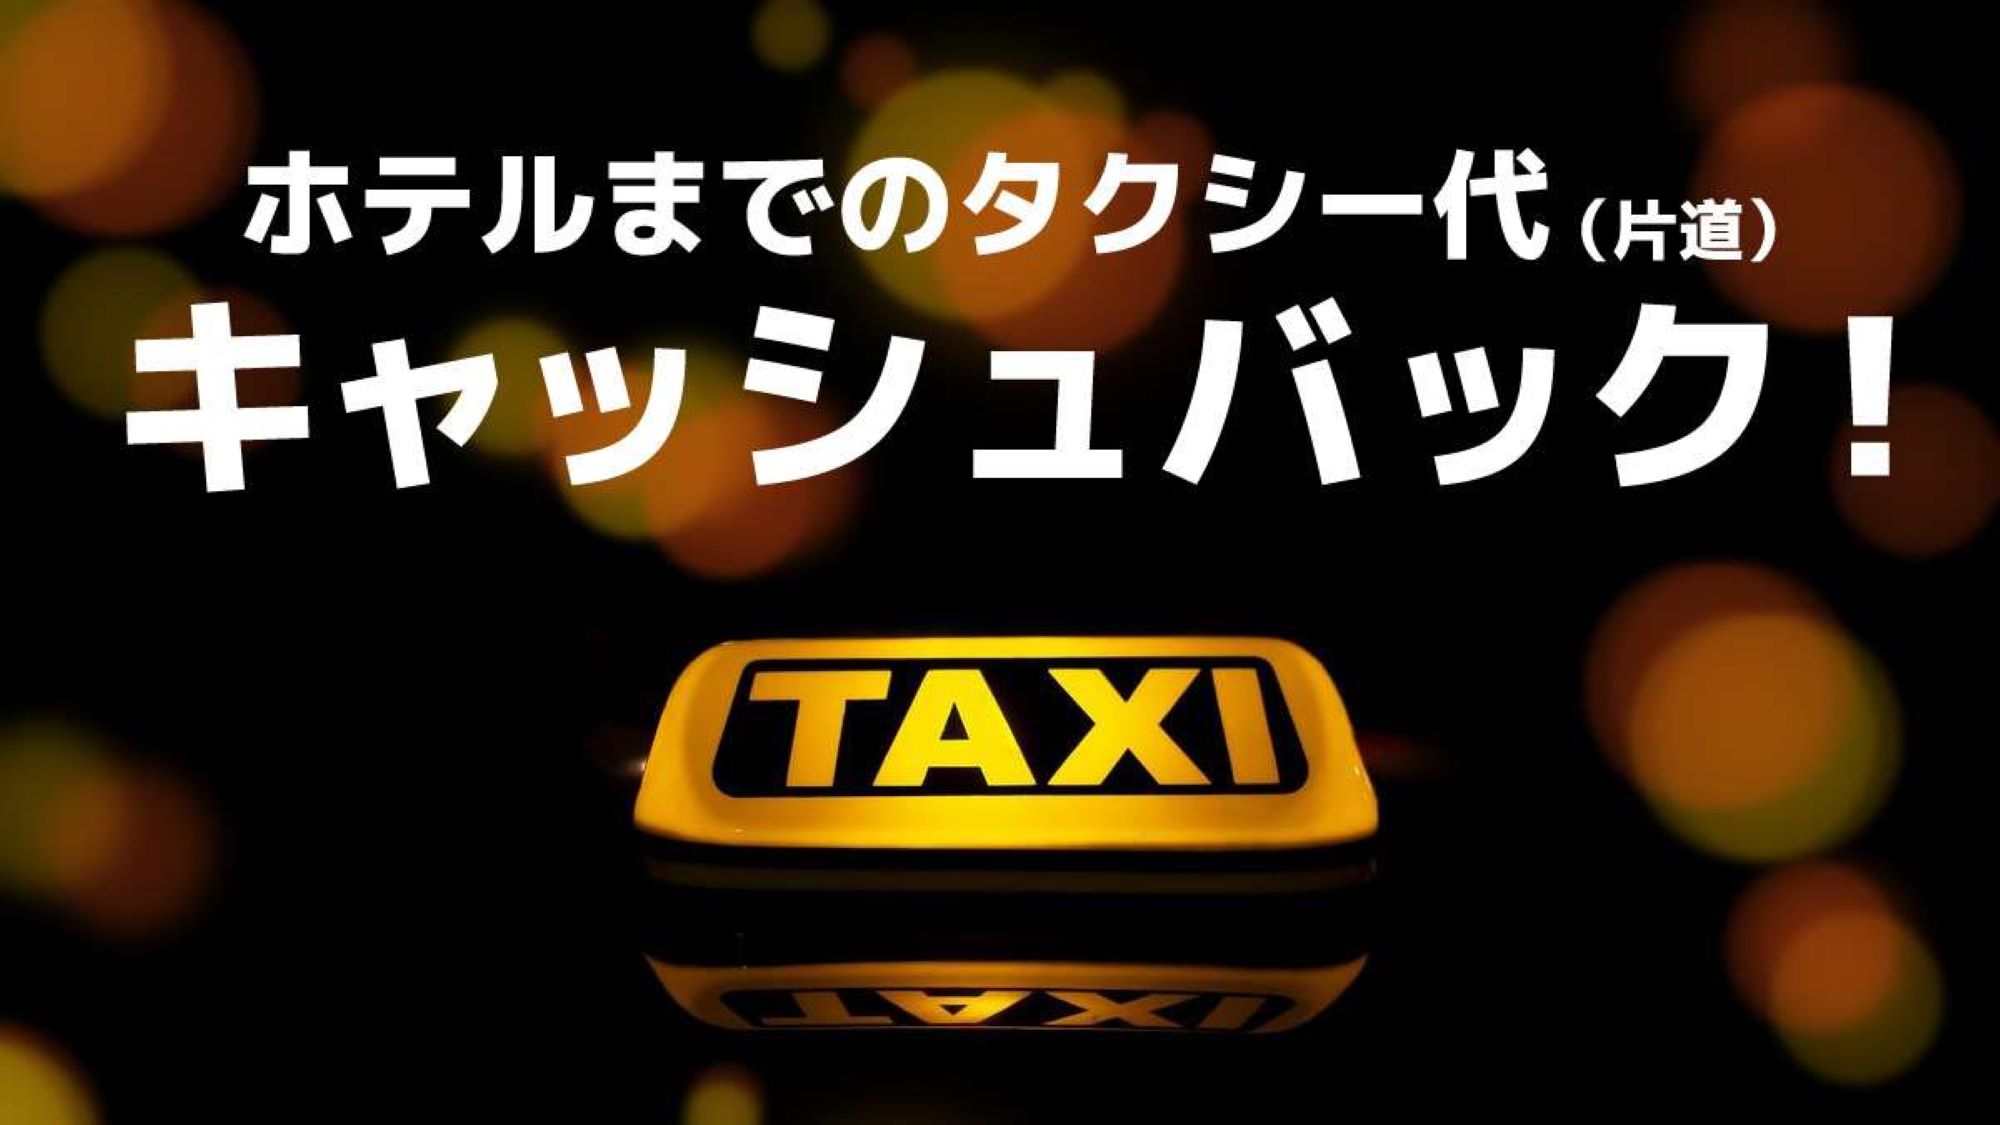 タクシー代キャッシュバック(片道分)